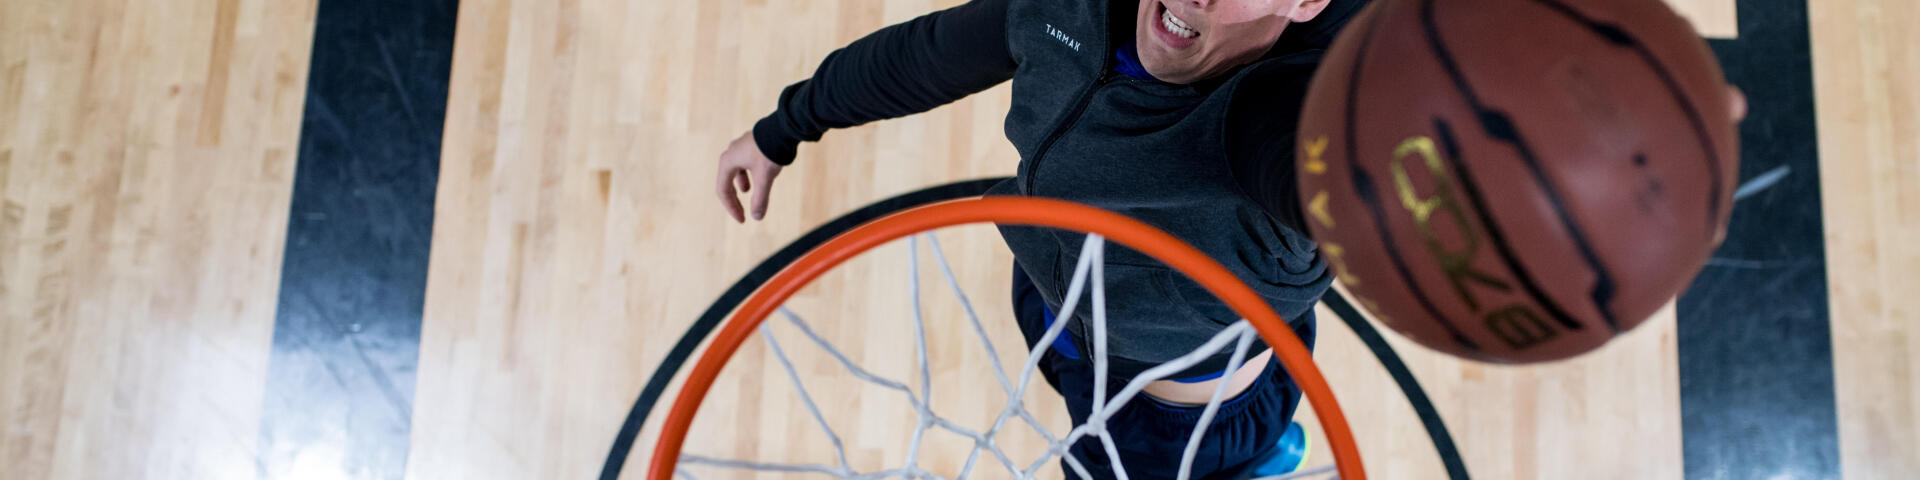 basket tout savoir sur le dunk